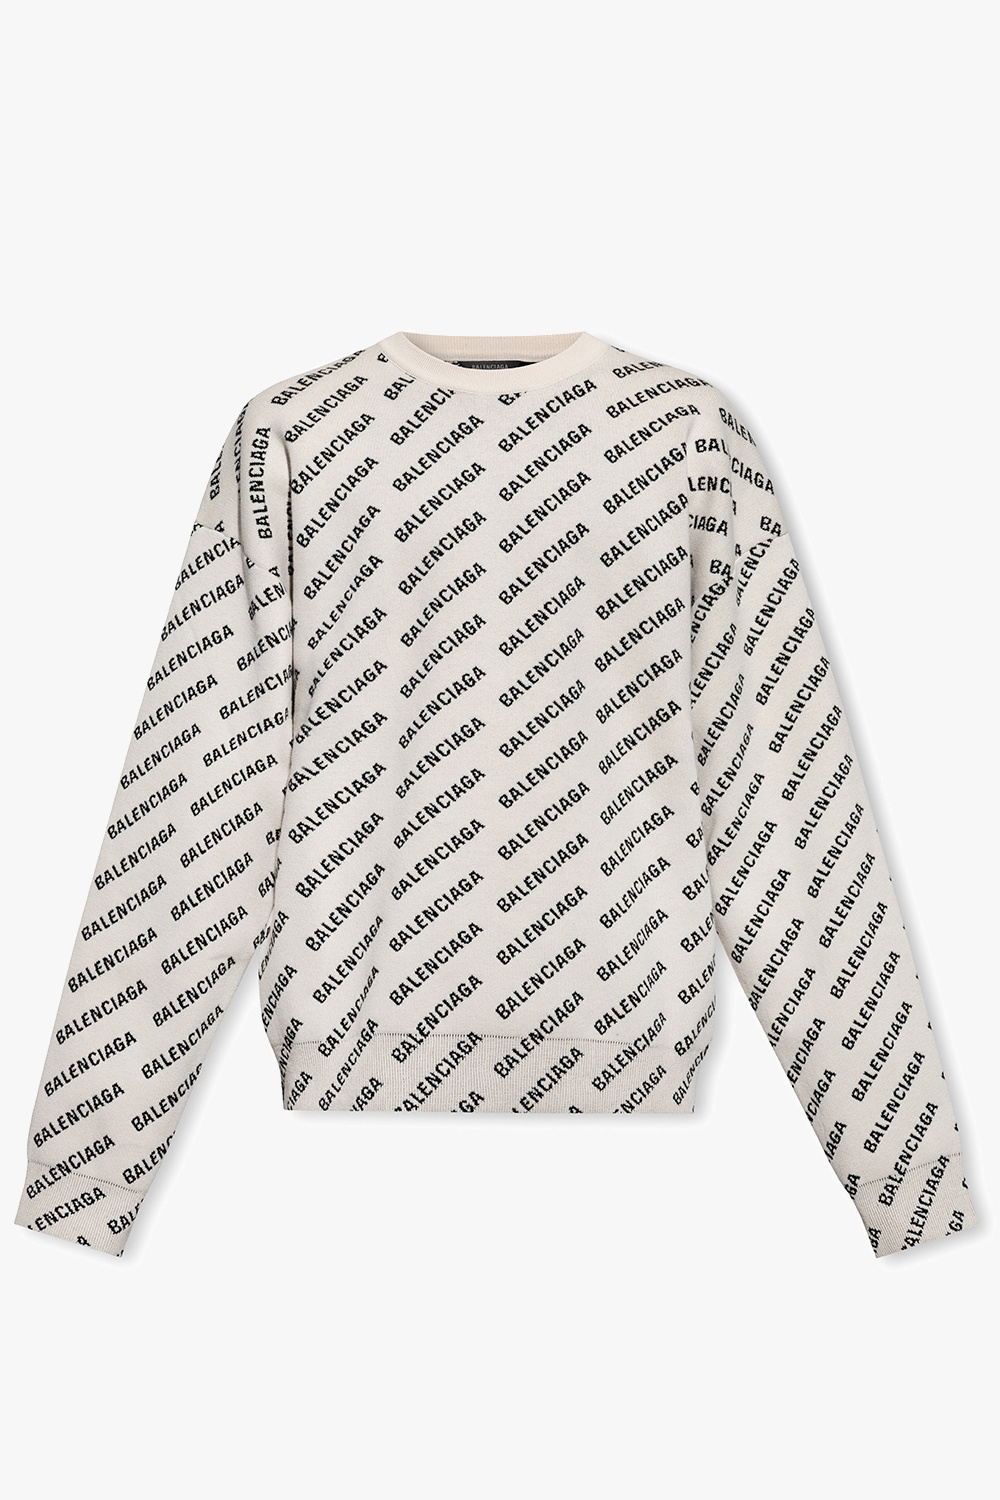 Louis Vuitton Sweater in 2023  Louis vuitton sweater, Sweaters, Balenciaga  shirt